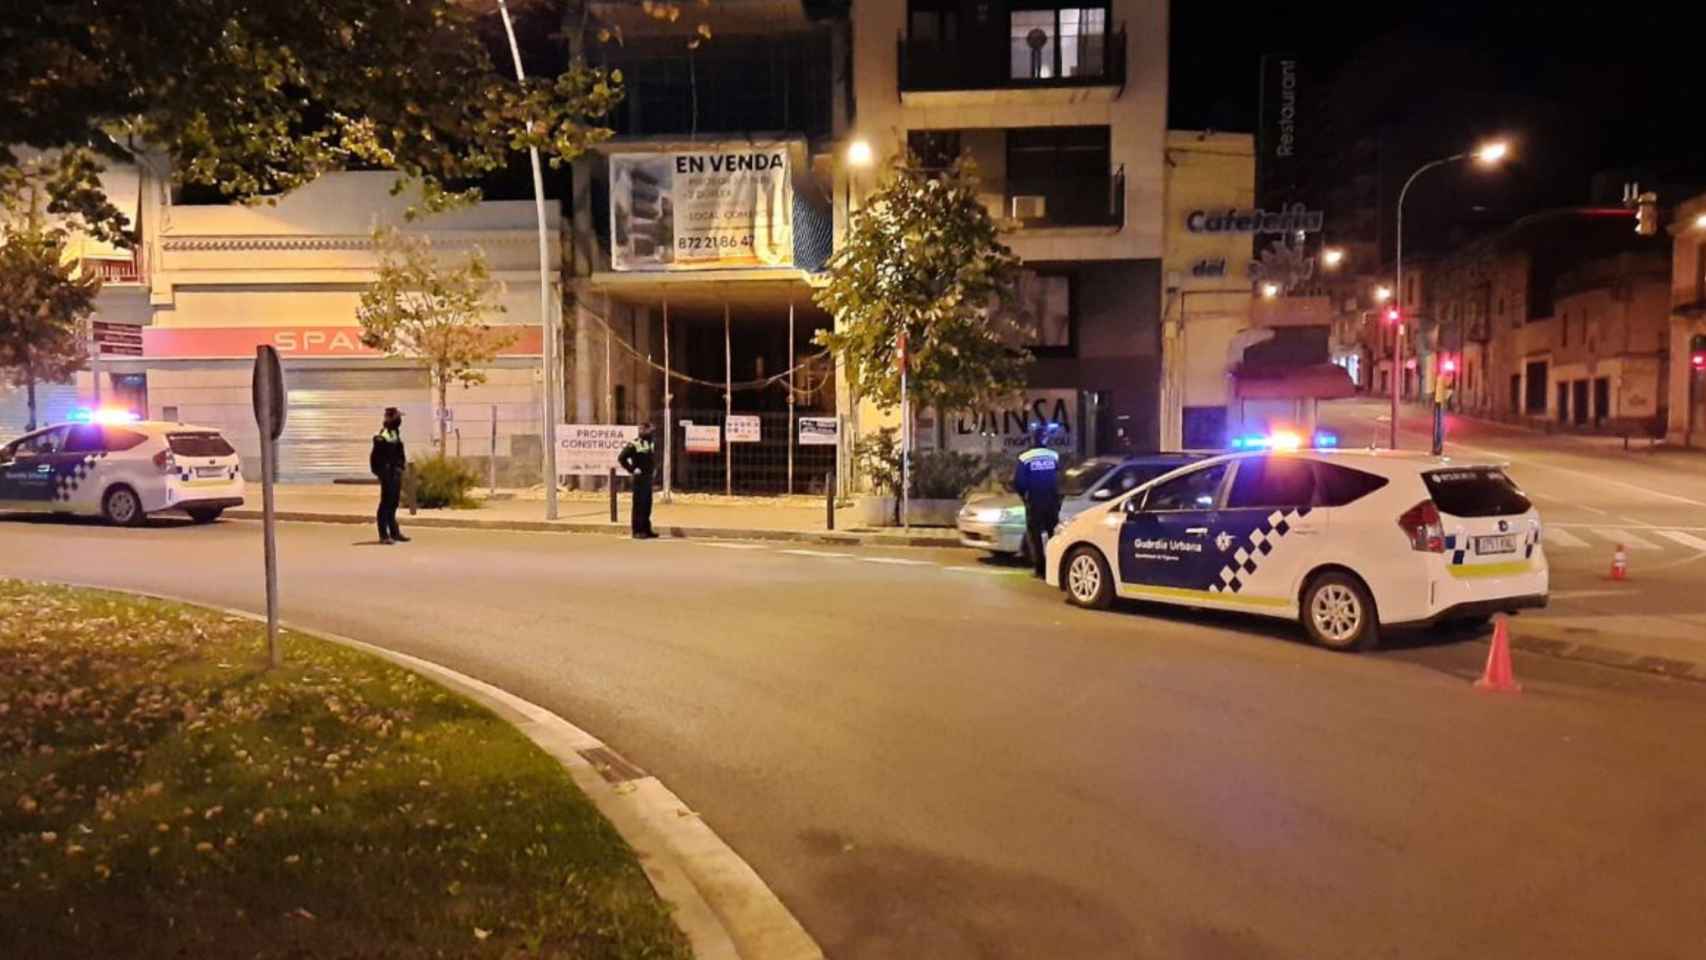 La Guardia Urbana desmantela dos fiestas ilegales en pisos turísticos de Figueres / URBANA DE FIGUERES